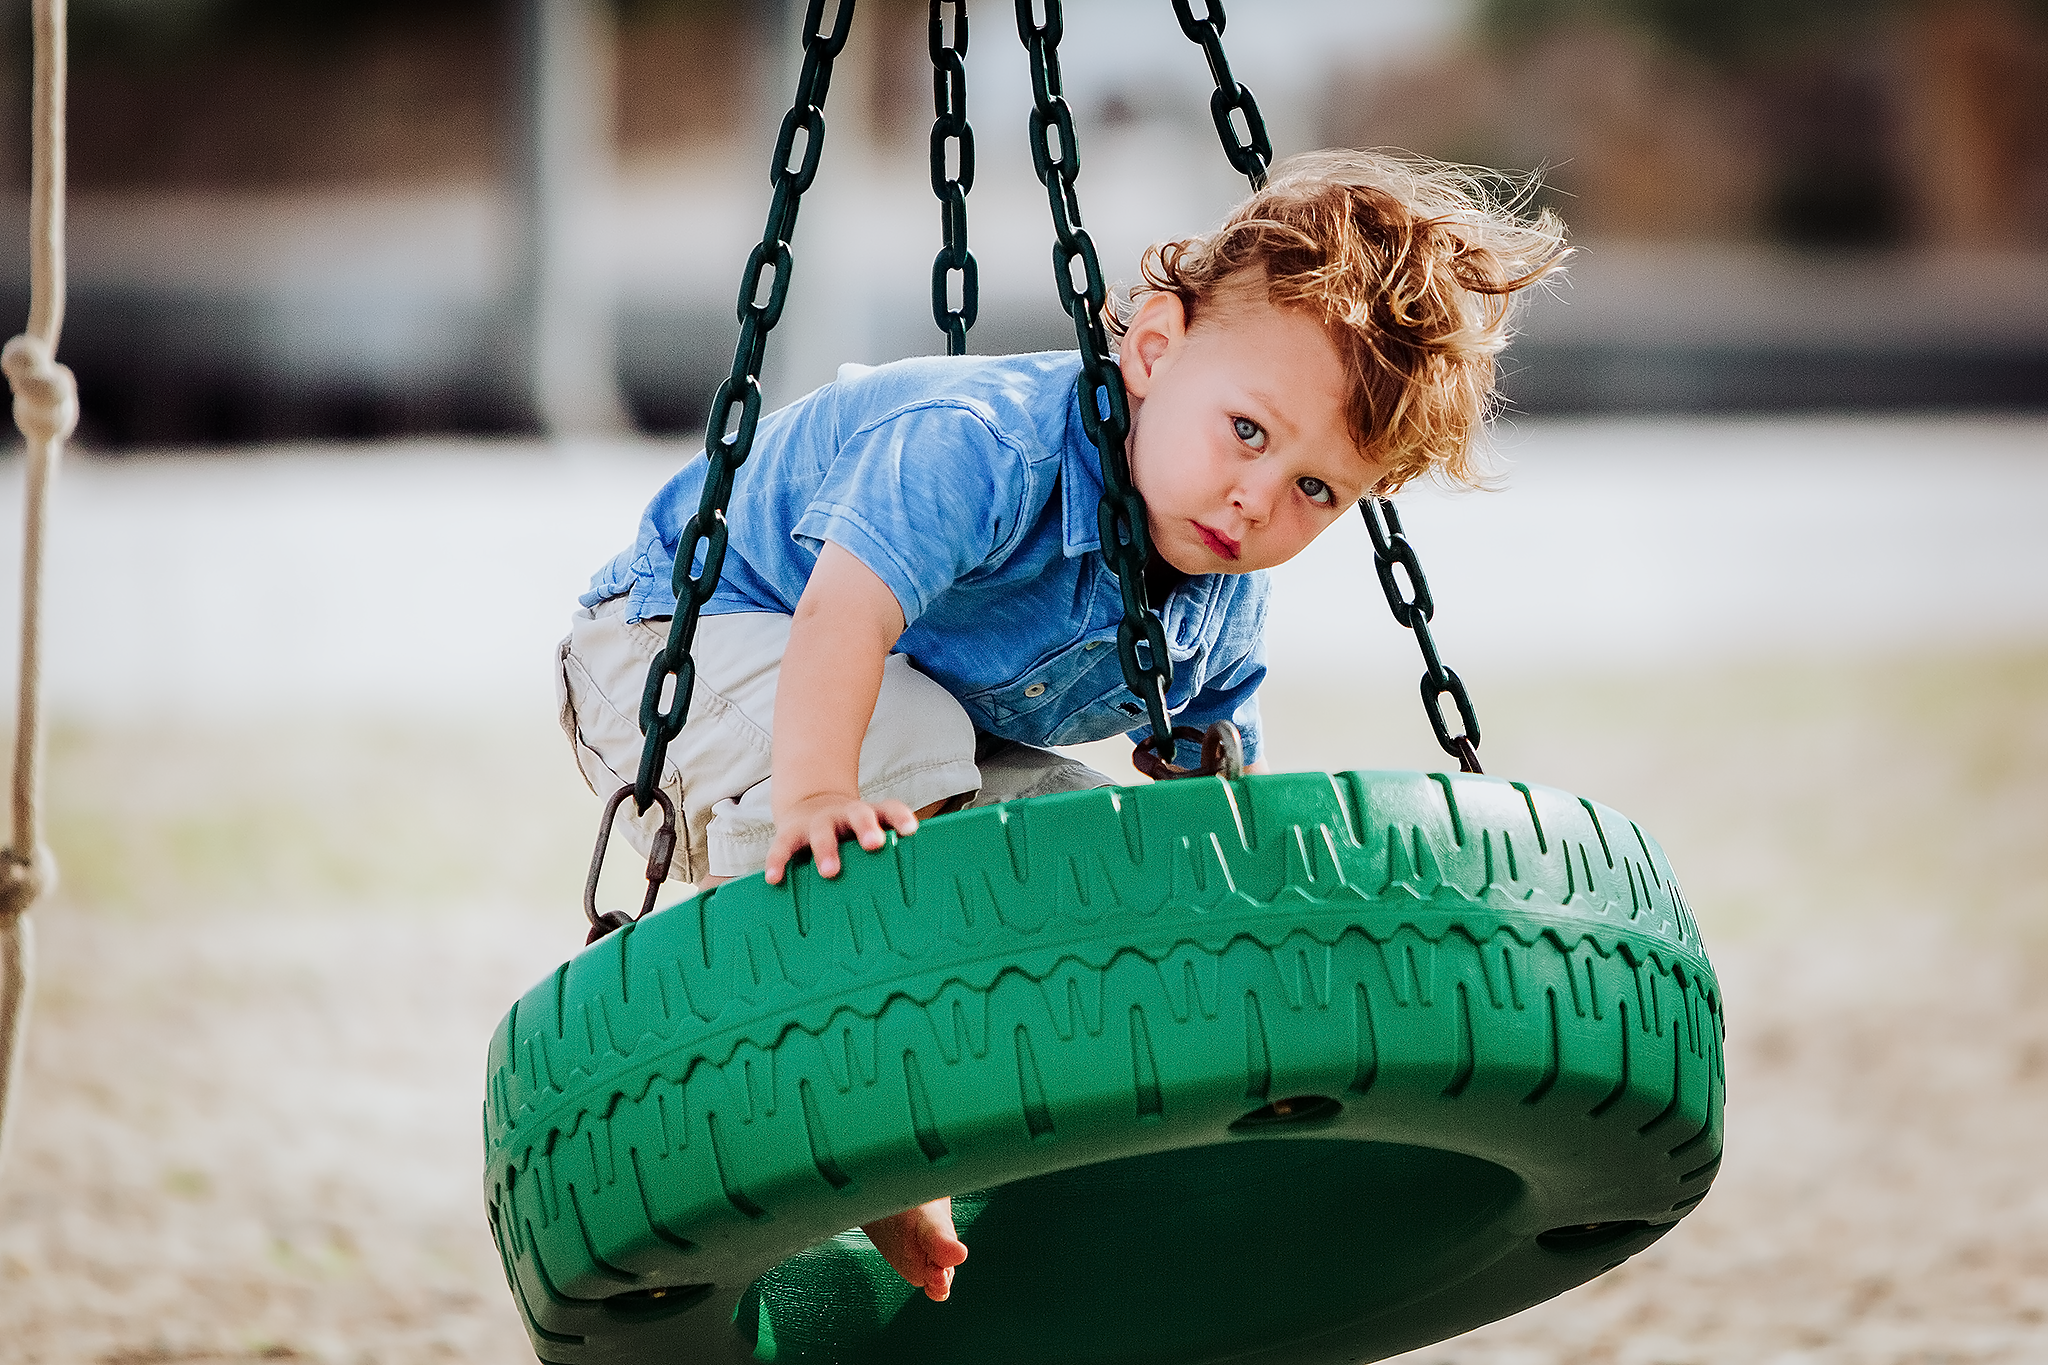 Little boy on green tire swing